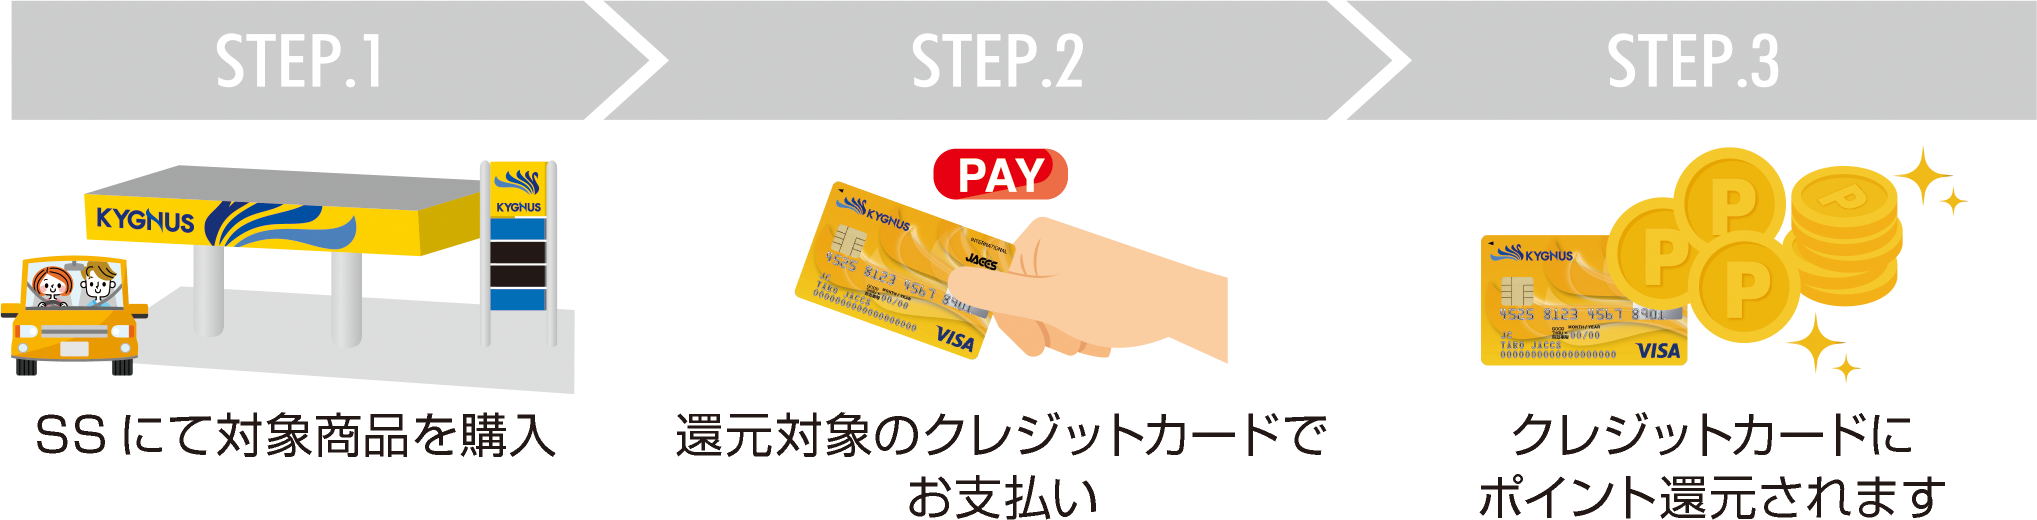 1.SSにて対象商品を購入 2.還元対象のクレジットカードでお支払い 3.クレジットカードにポイント還元されます